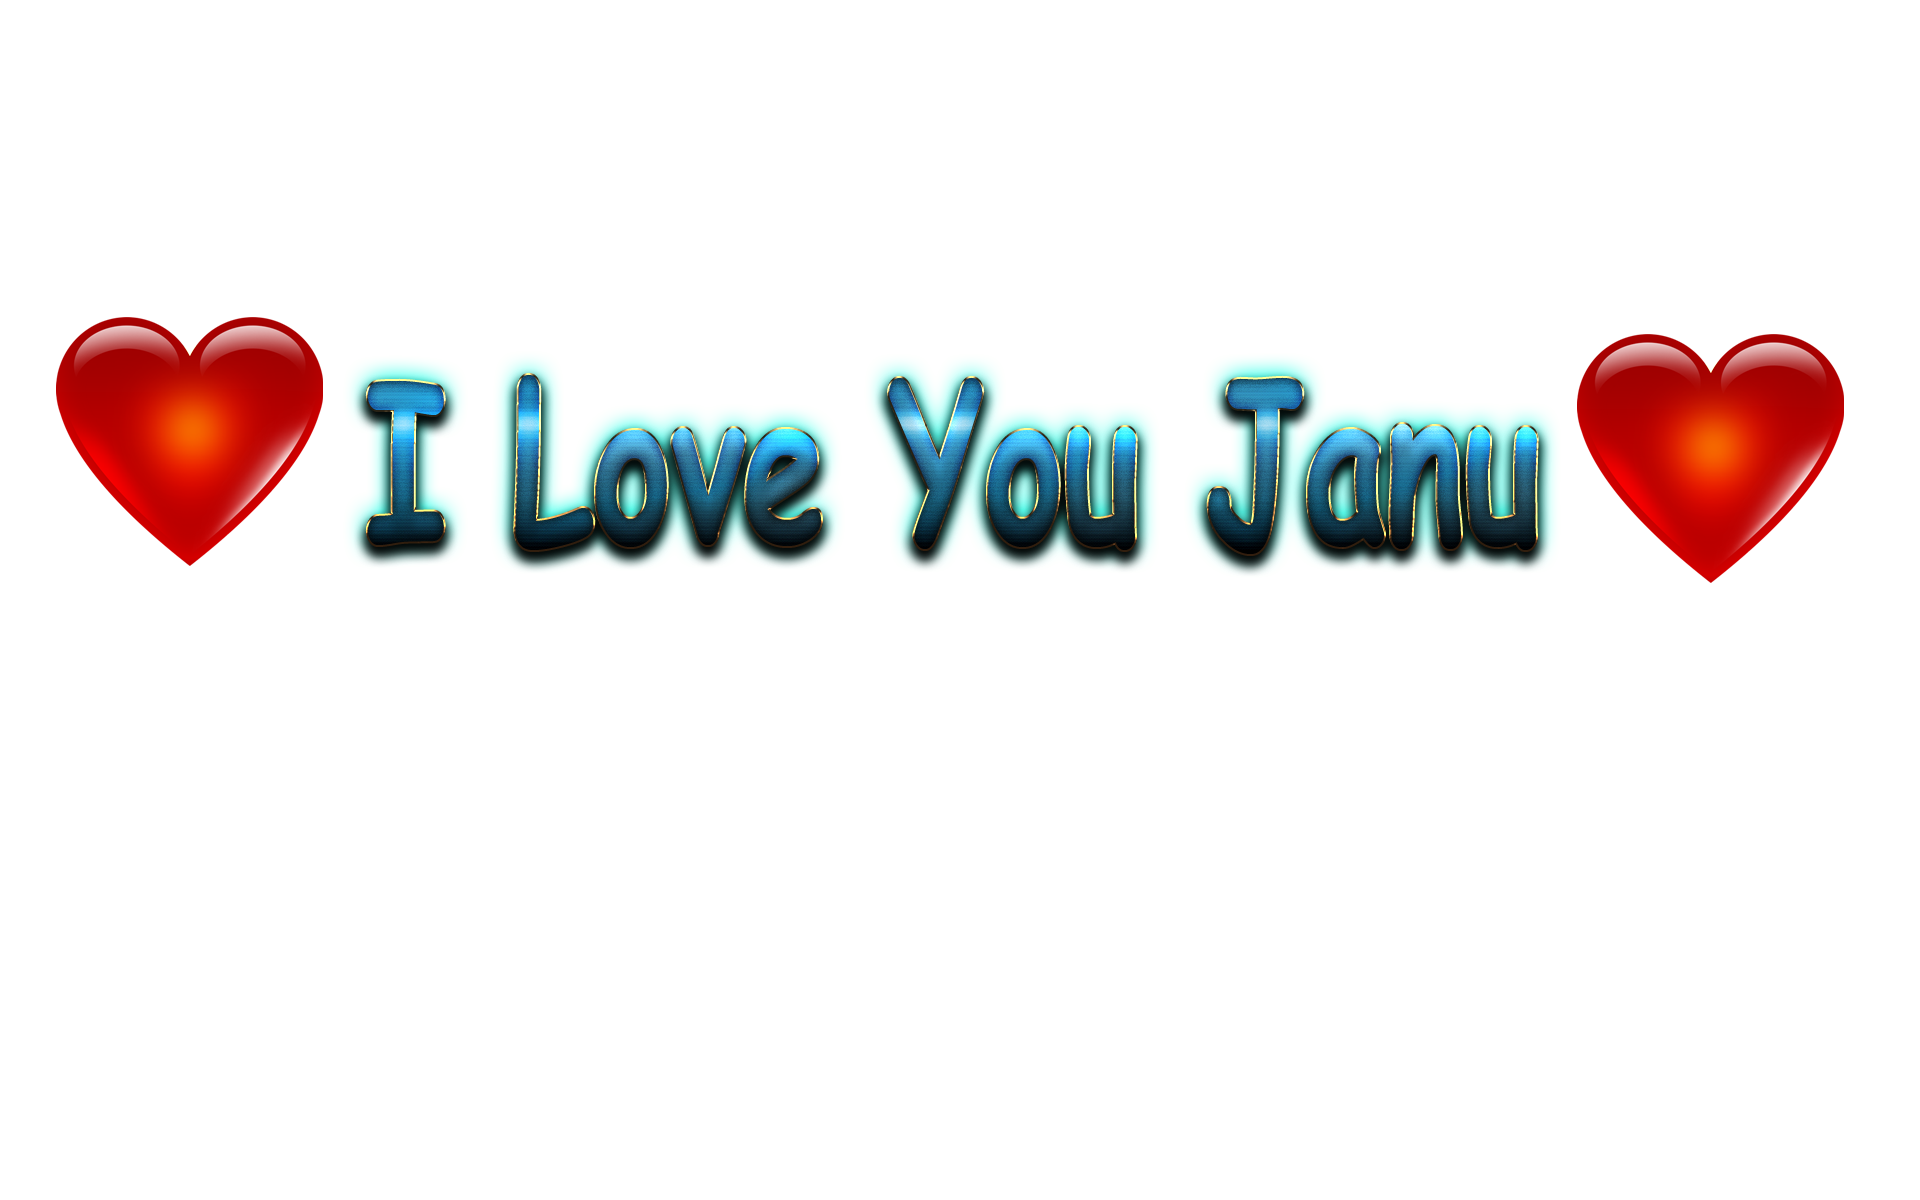 I Love You Janu Love Name Heart Design Png - Nonu I Love You - 1920x1200  Wallpaper 